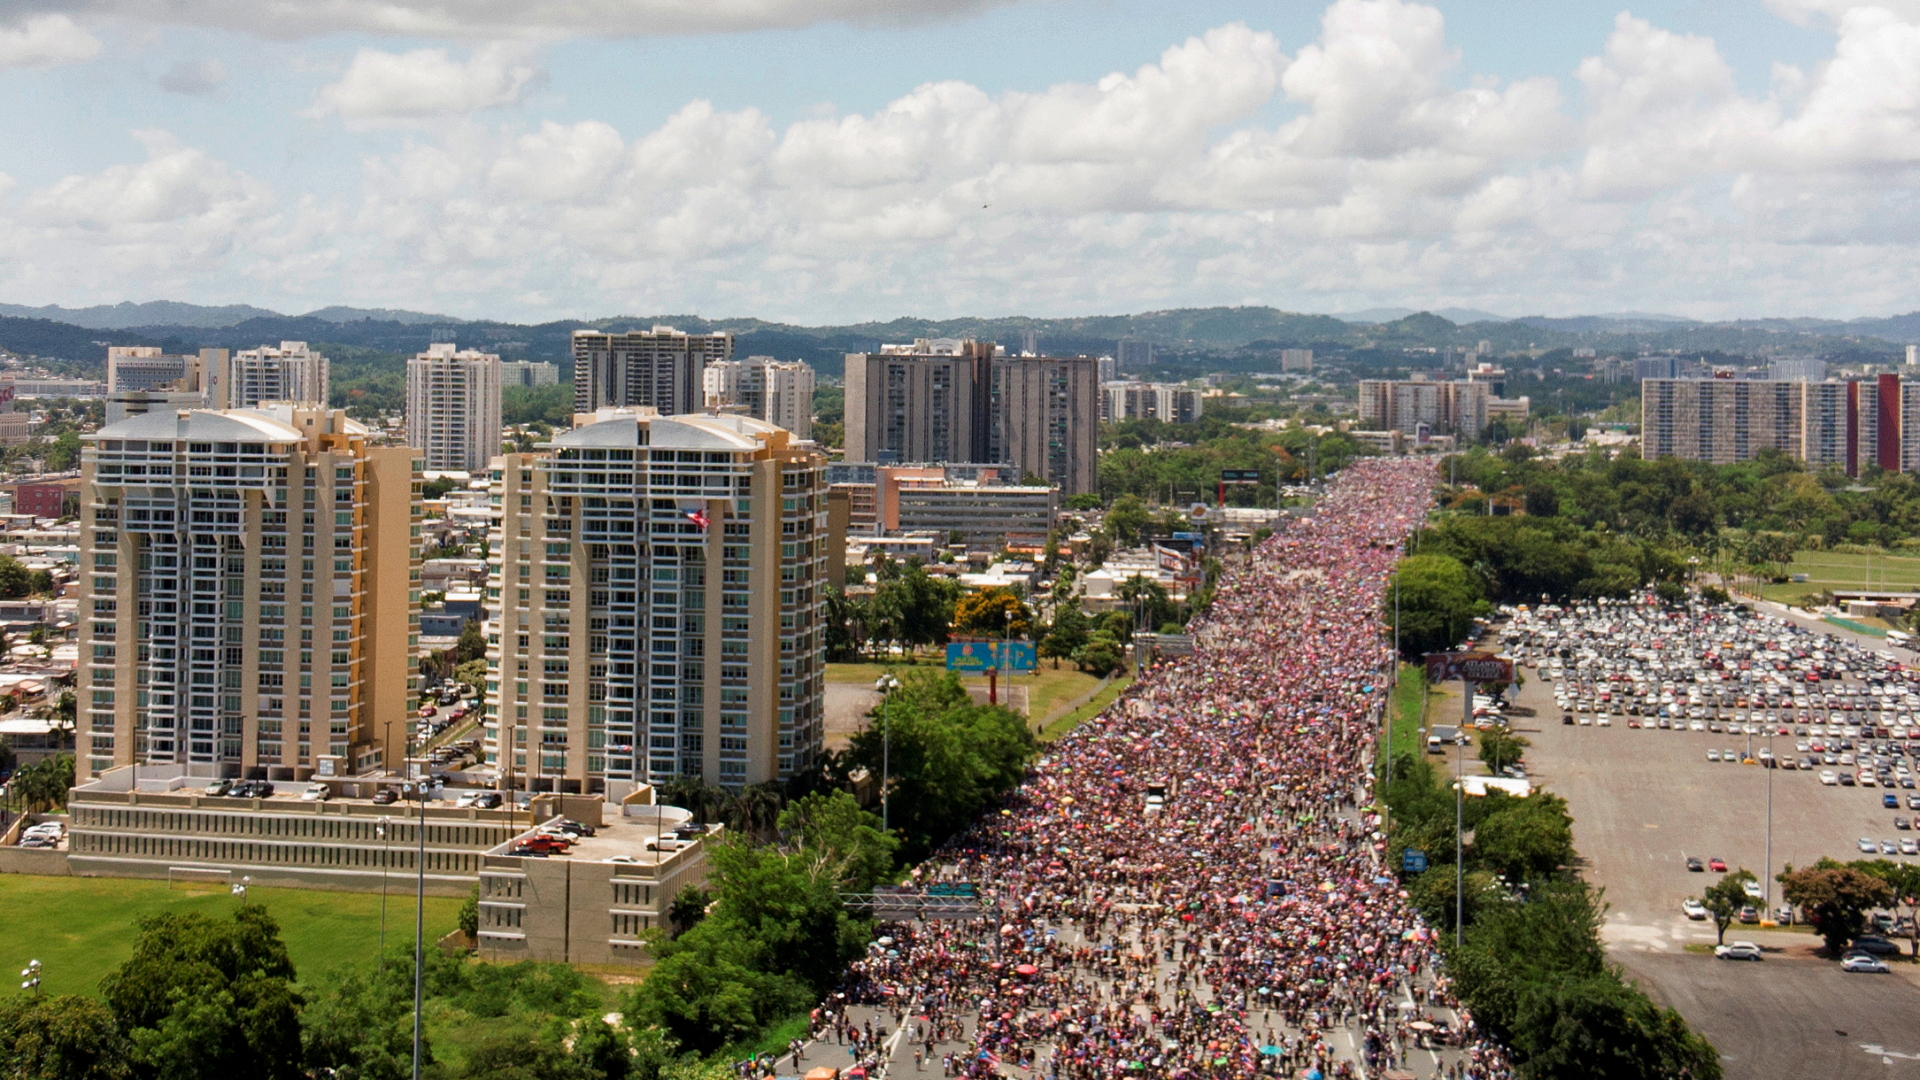 Luftaufnahmen zeigen das Ausmaß der Proteste. | REUTERS